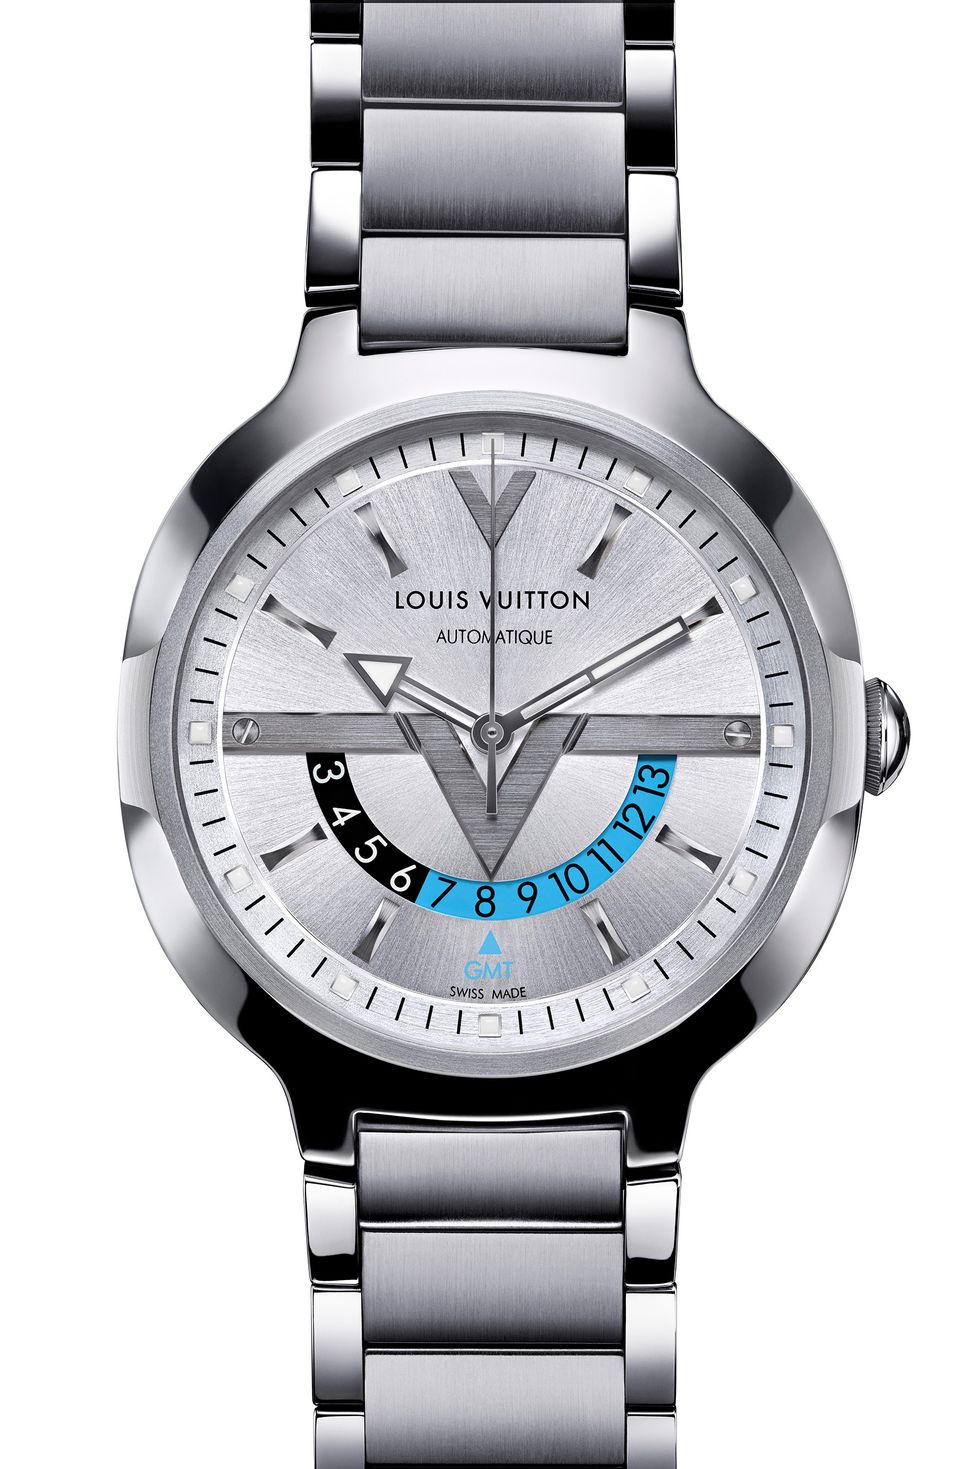 16 Best Louis Vuitton men's watches ideas  louis vuitton, watches, louis  vuitton watches